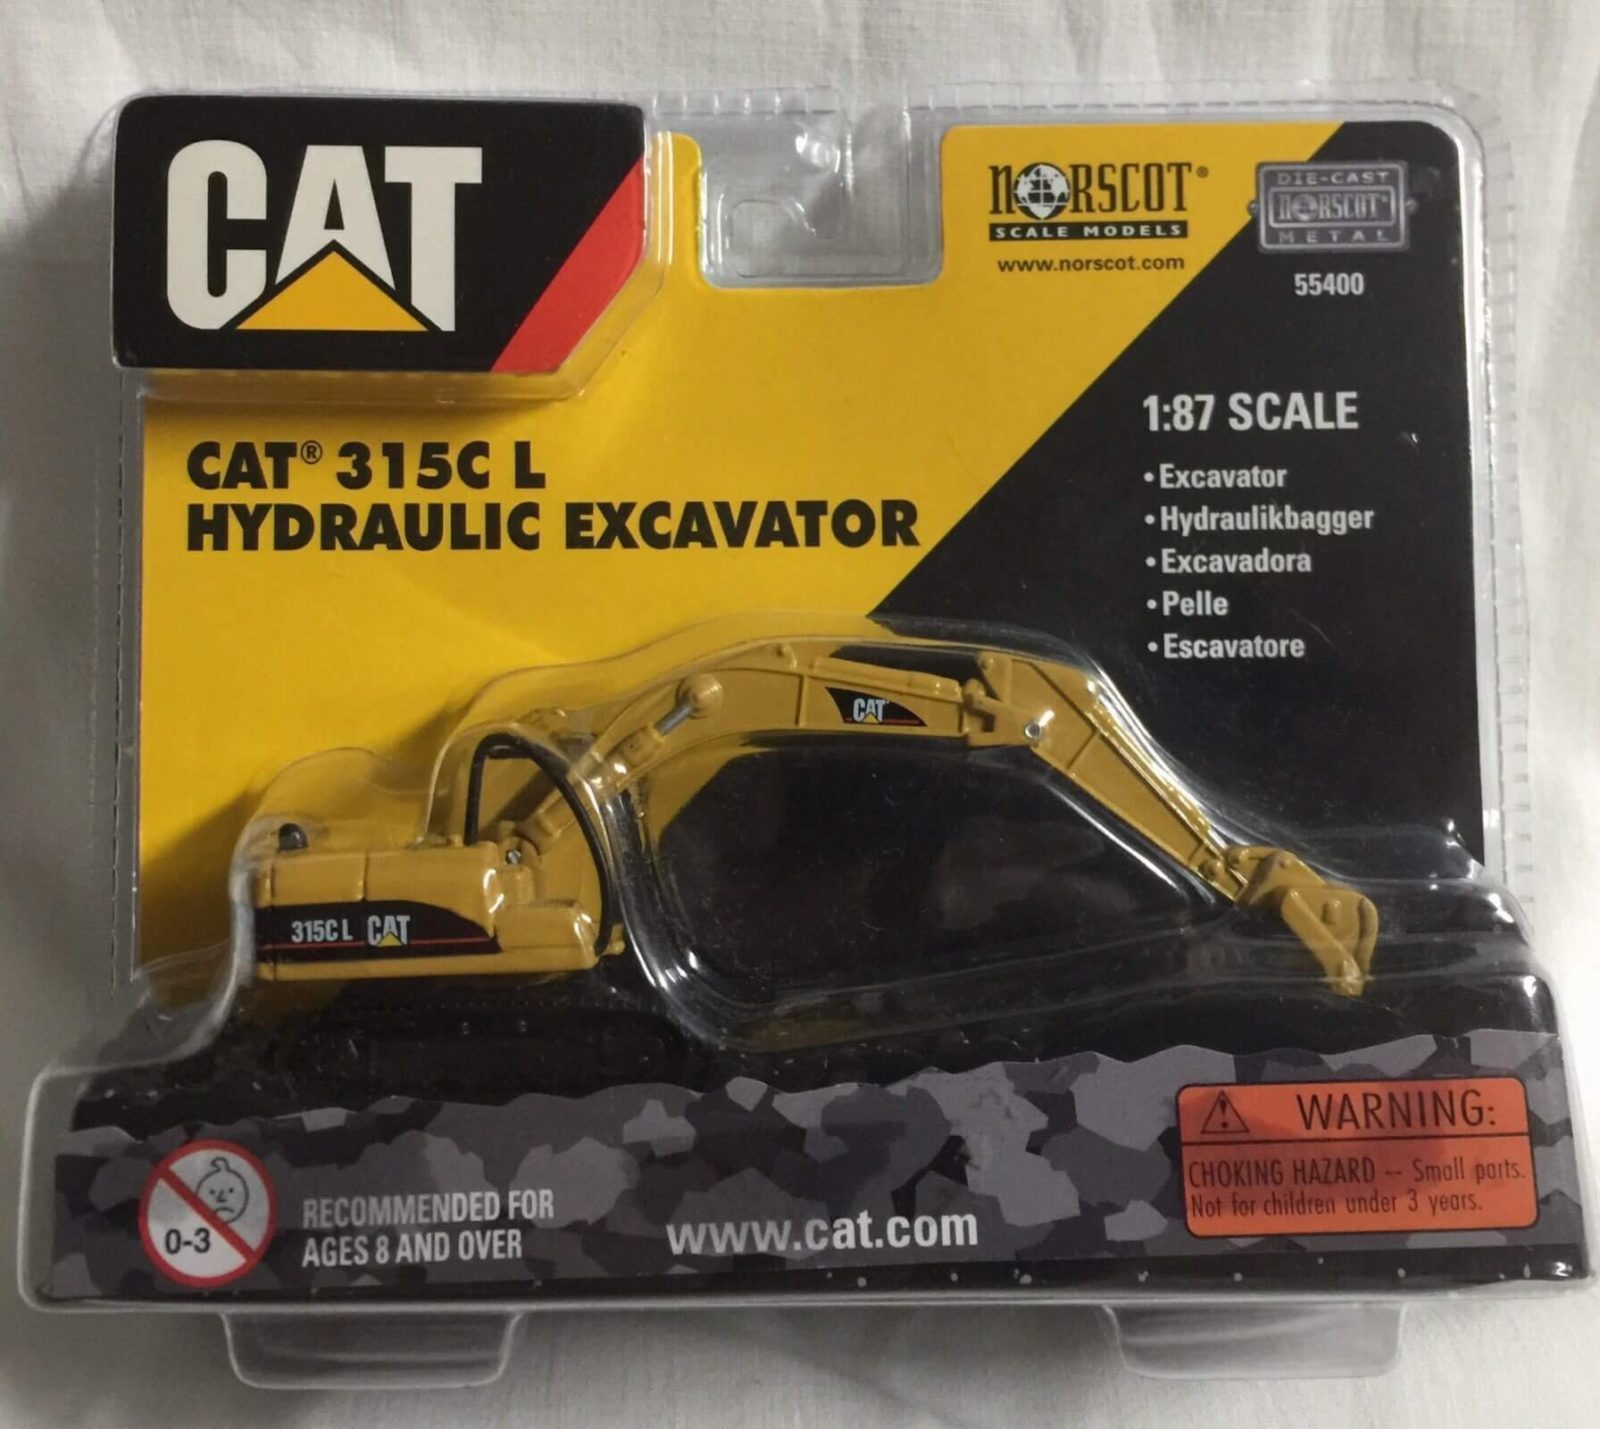 Norscot Cat 315 L Hydraulic Excavator Ref 55400 Escala 1:87